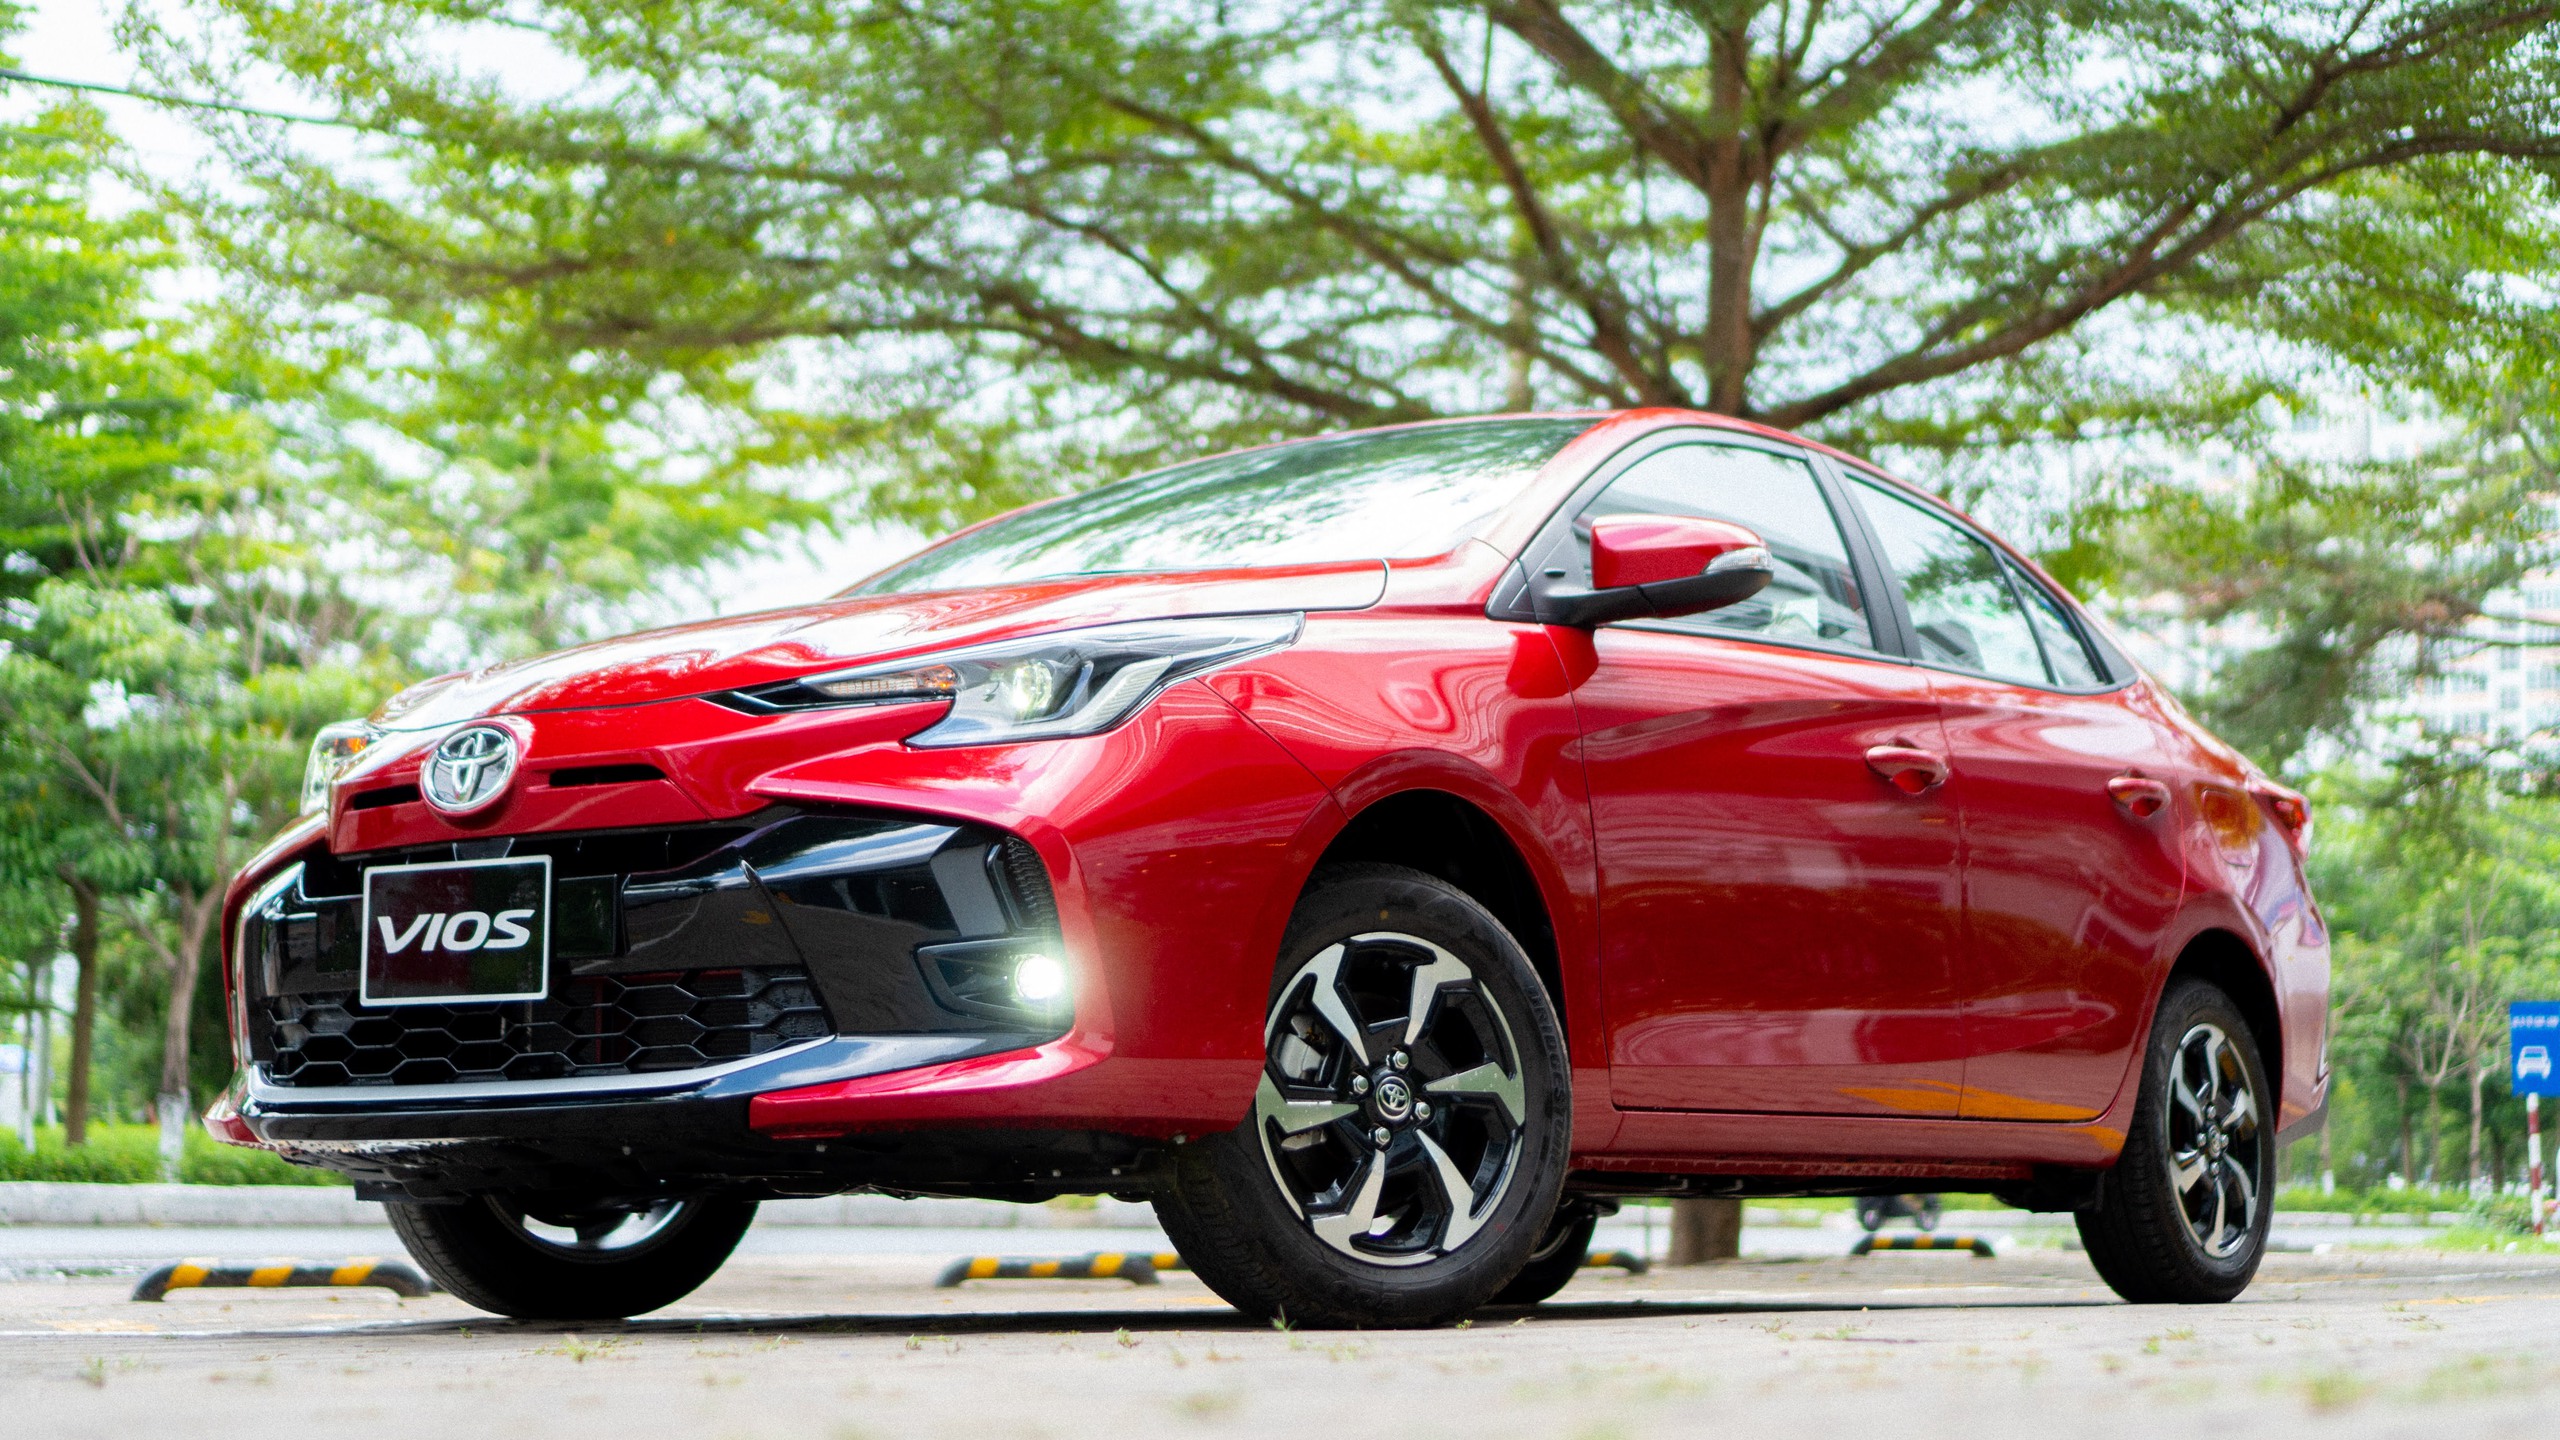 Vios chiếm gần 30% lượng xe Toyota bán ra tại Việt Nam